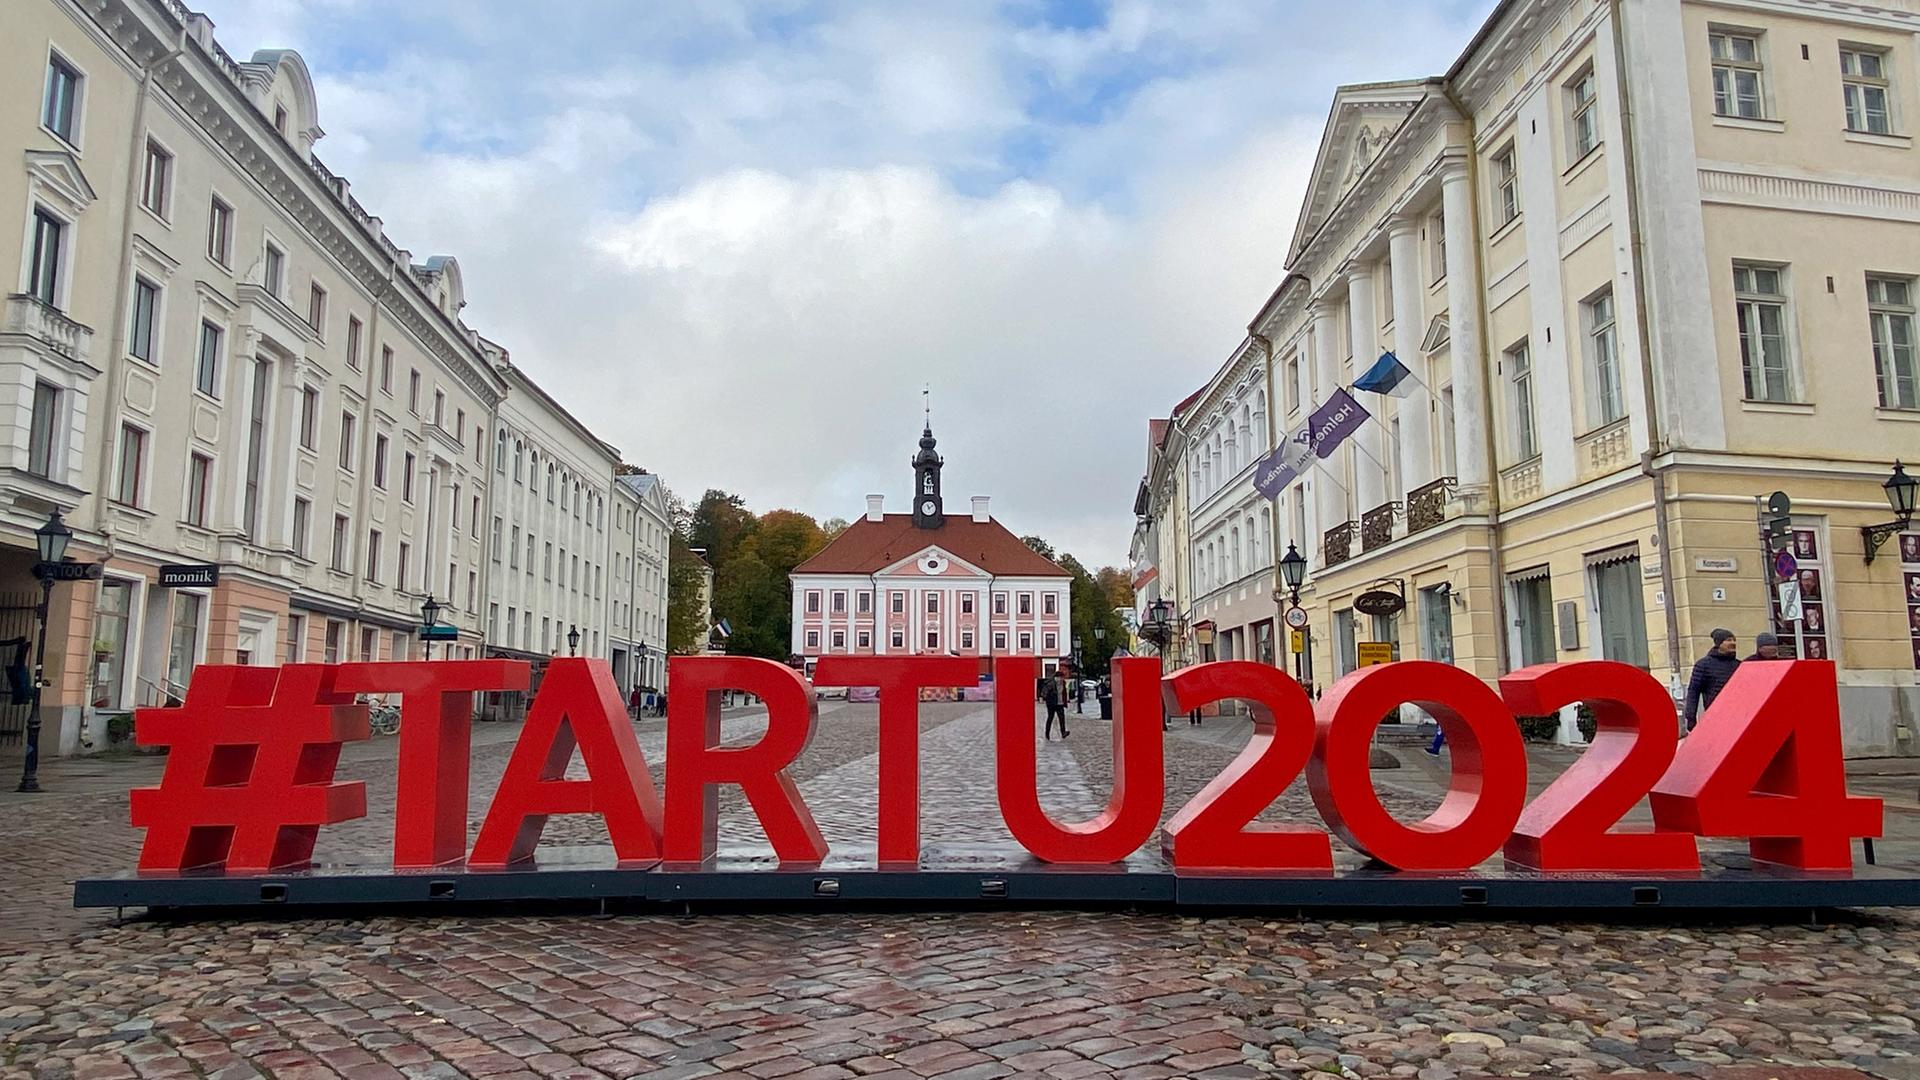 Ein Schriftzug "#Tartu2024" ist in Großbuchstaben auf dem gepflasterten Rathausplatz von Tartu aufgestellt. Im Hintergrund sieht man das historische Rathaus